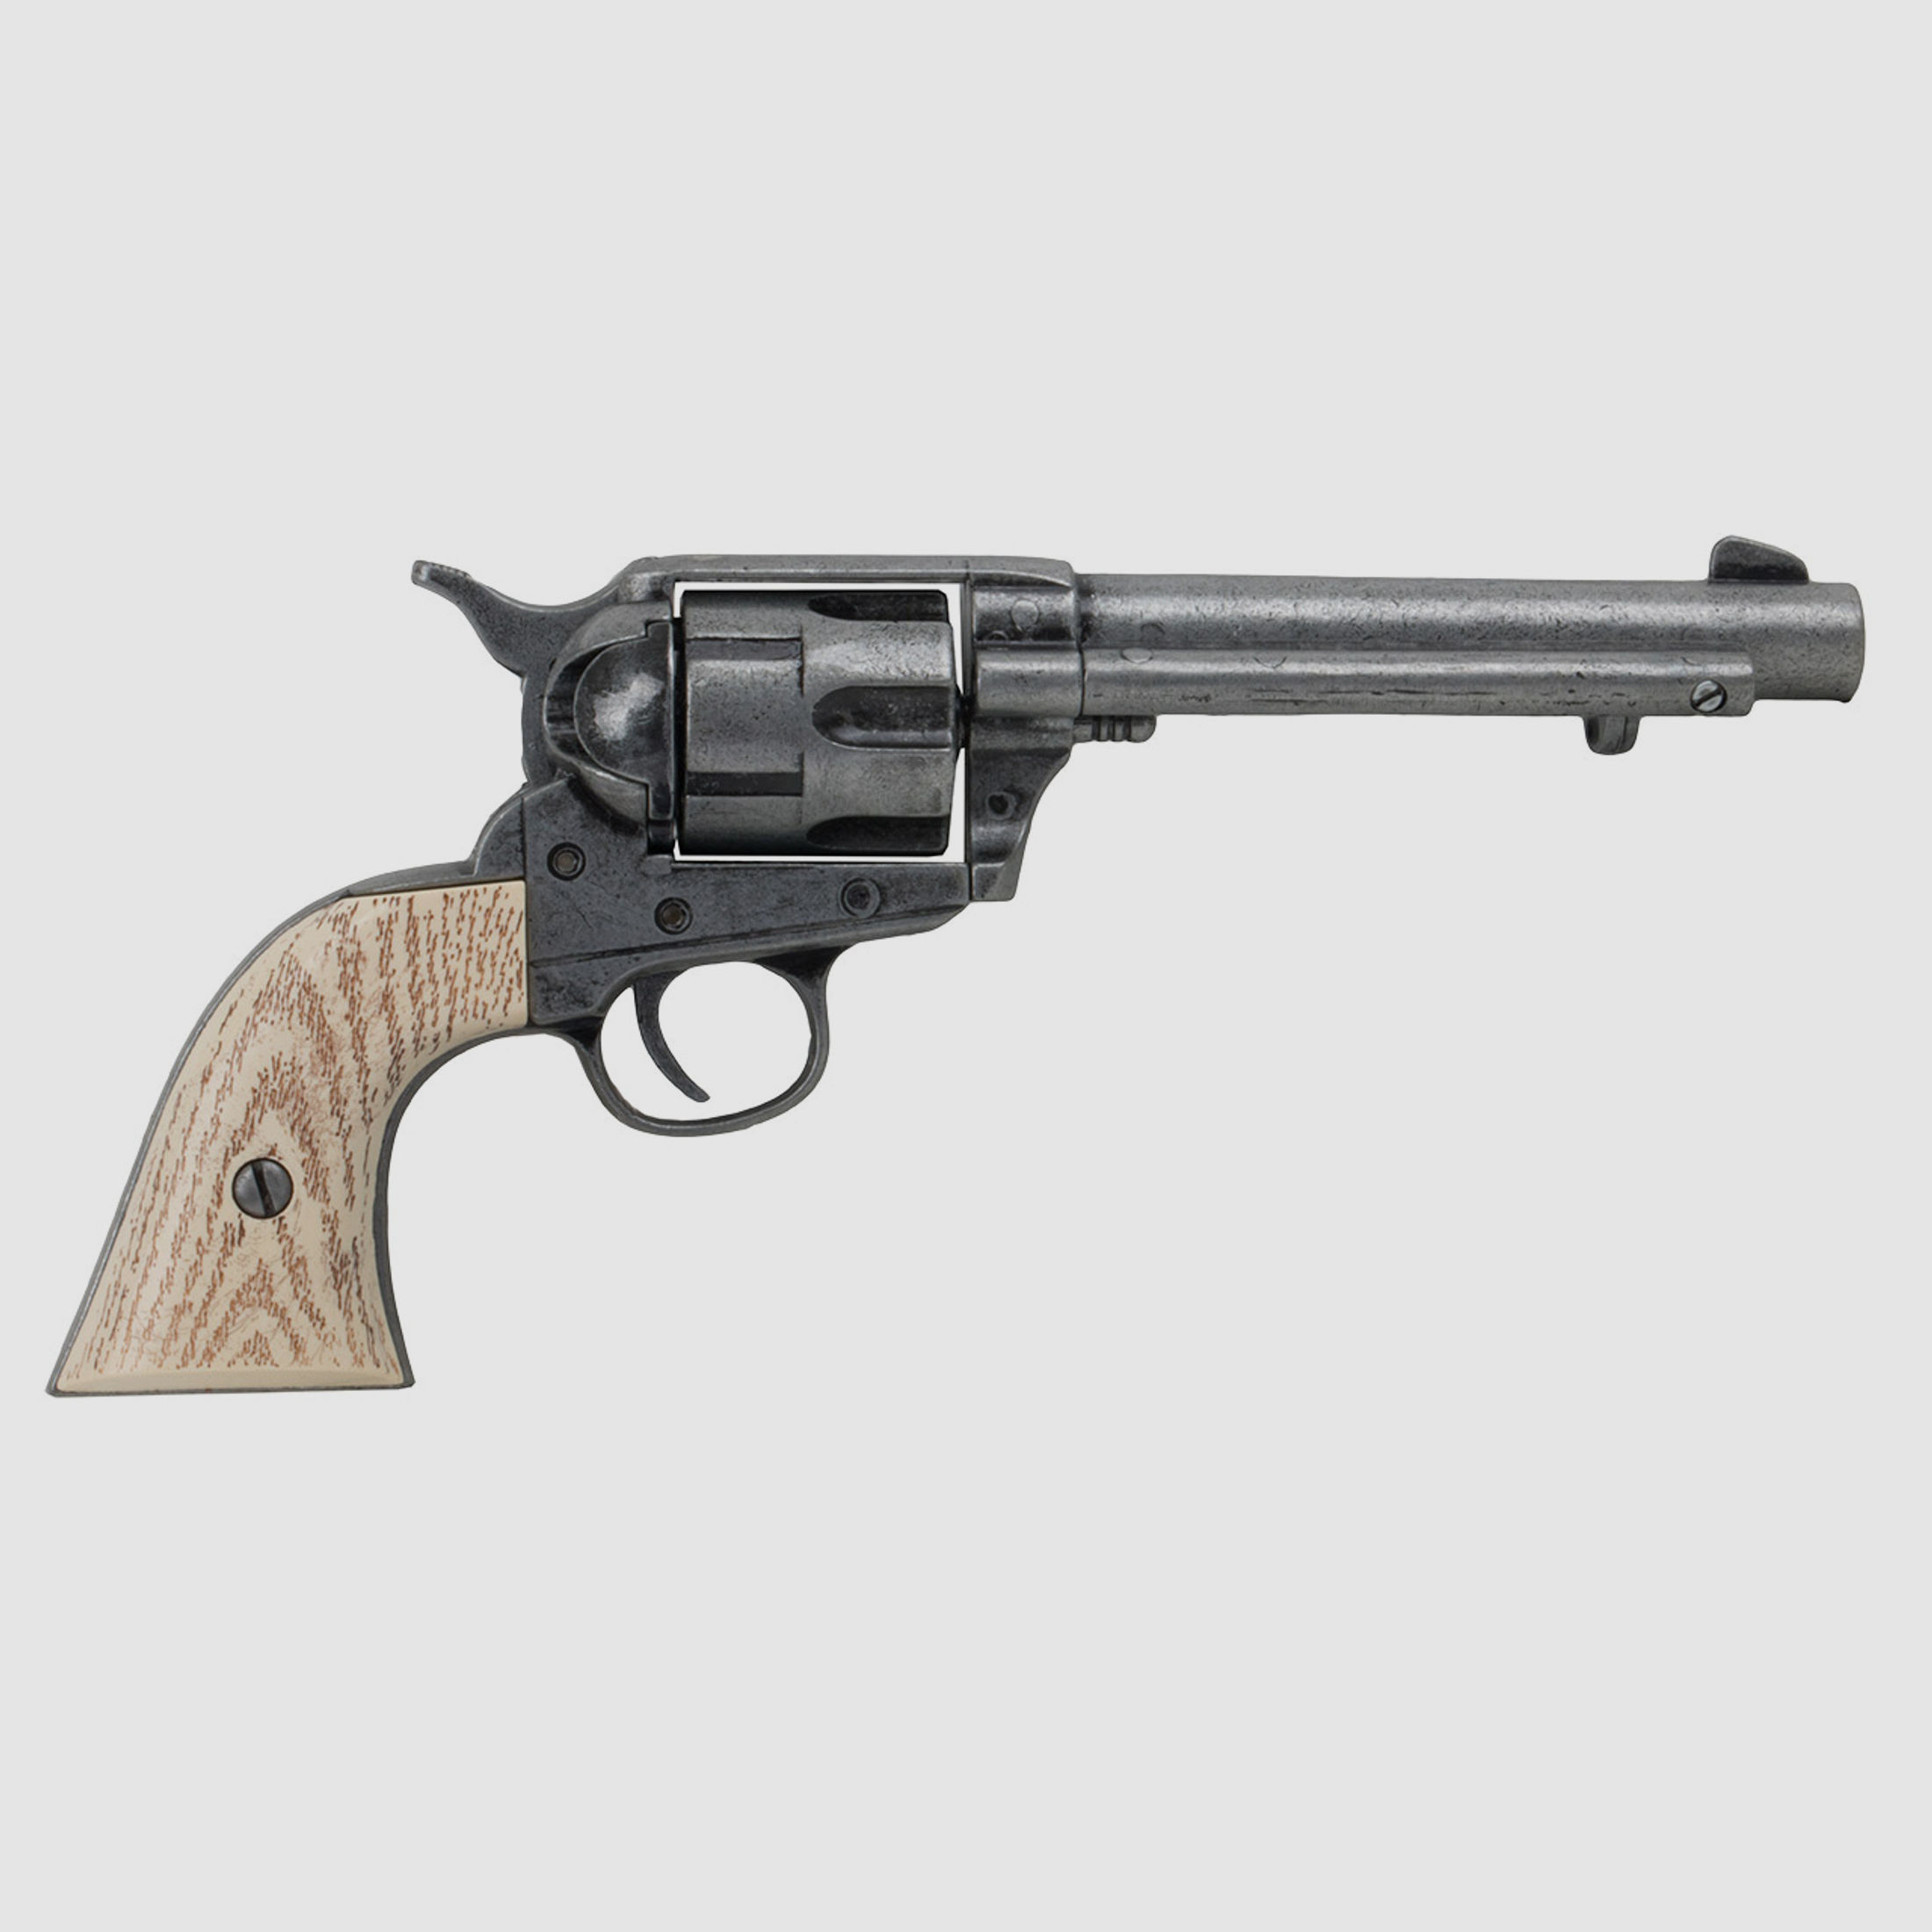 Deko Revolver Kolser Colt SAA .45 Peacemaker USA 1873 5,5 Zoll antik grau weiĂźe Griffschalen